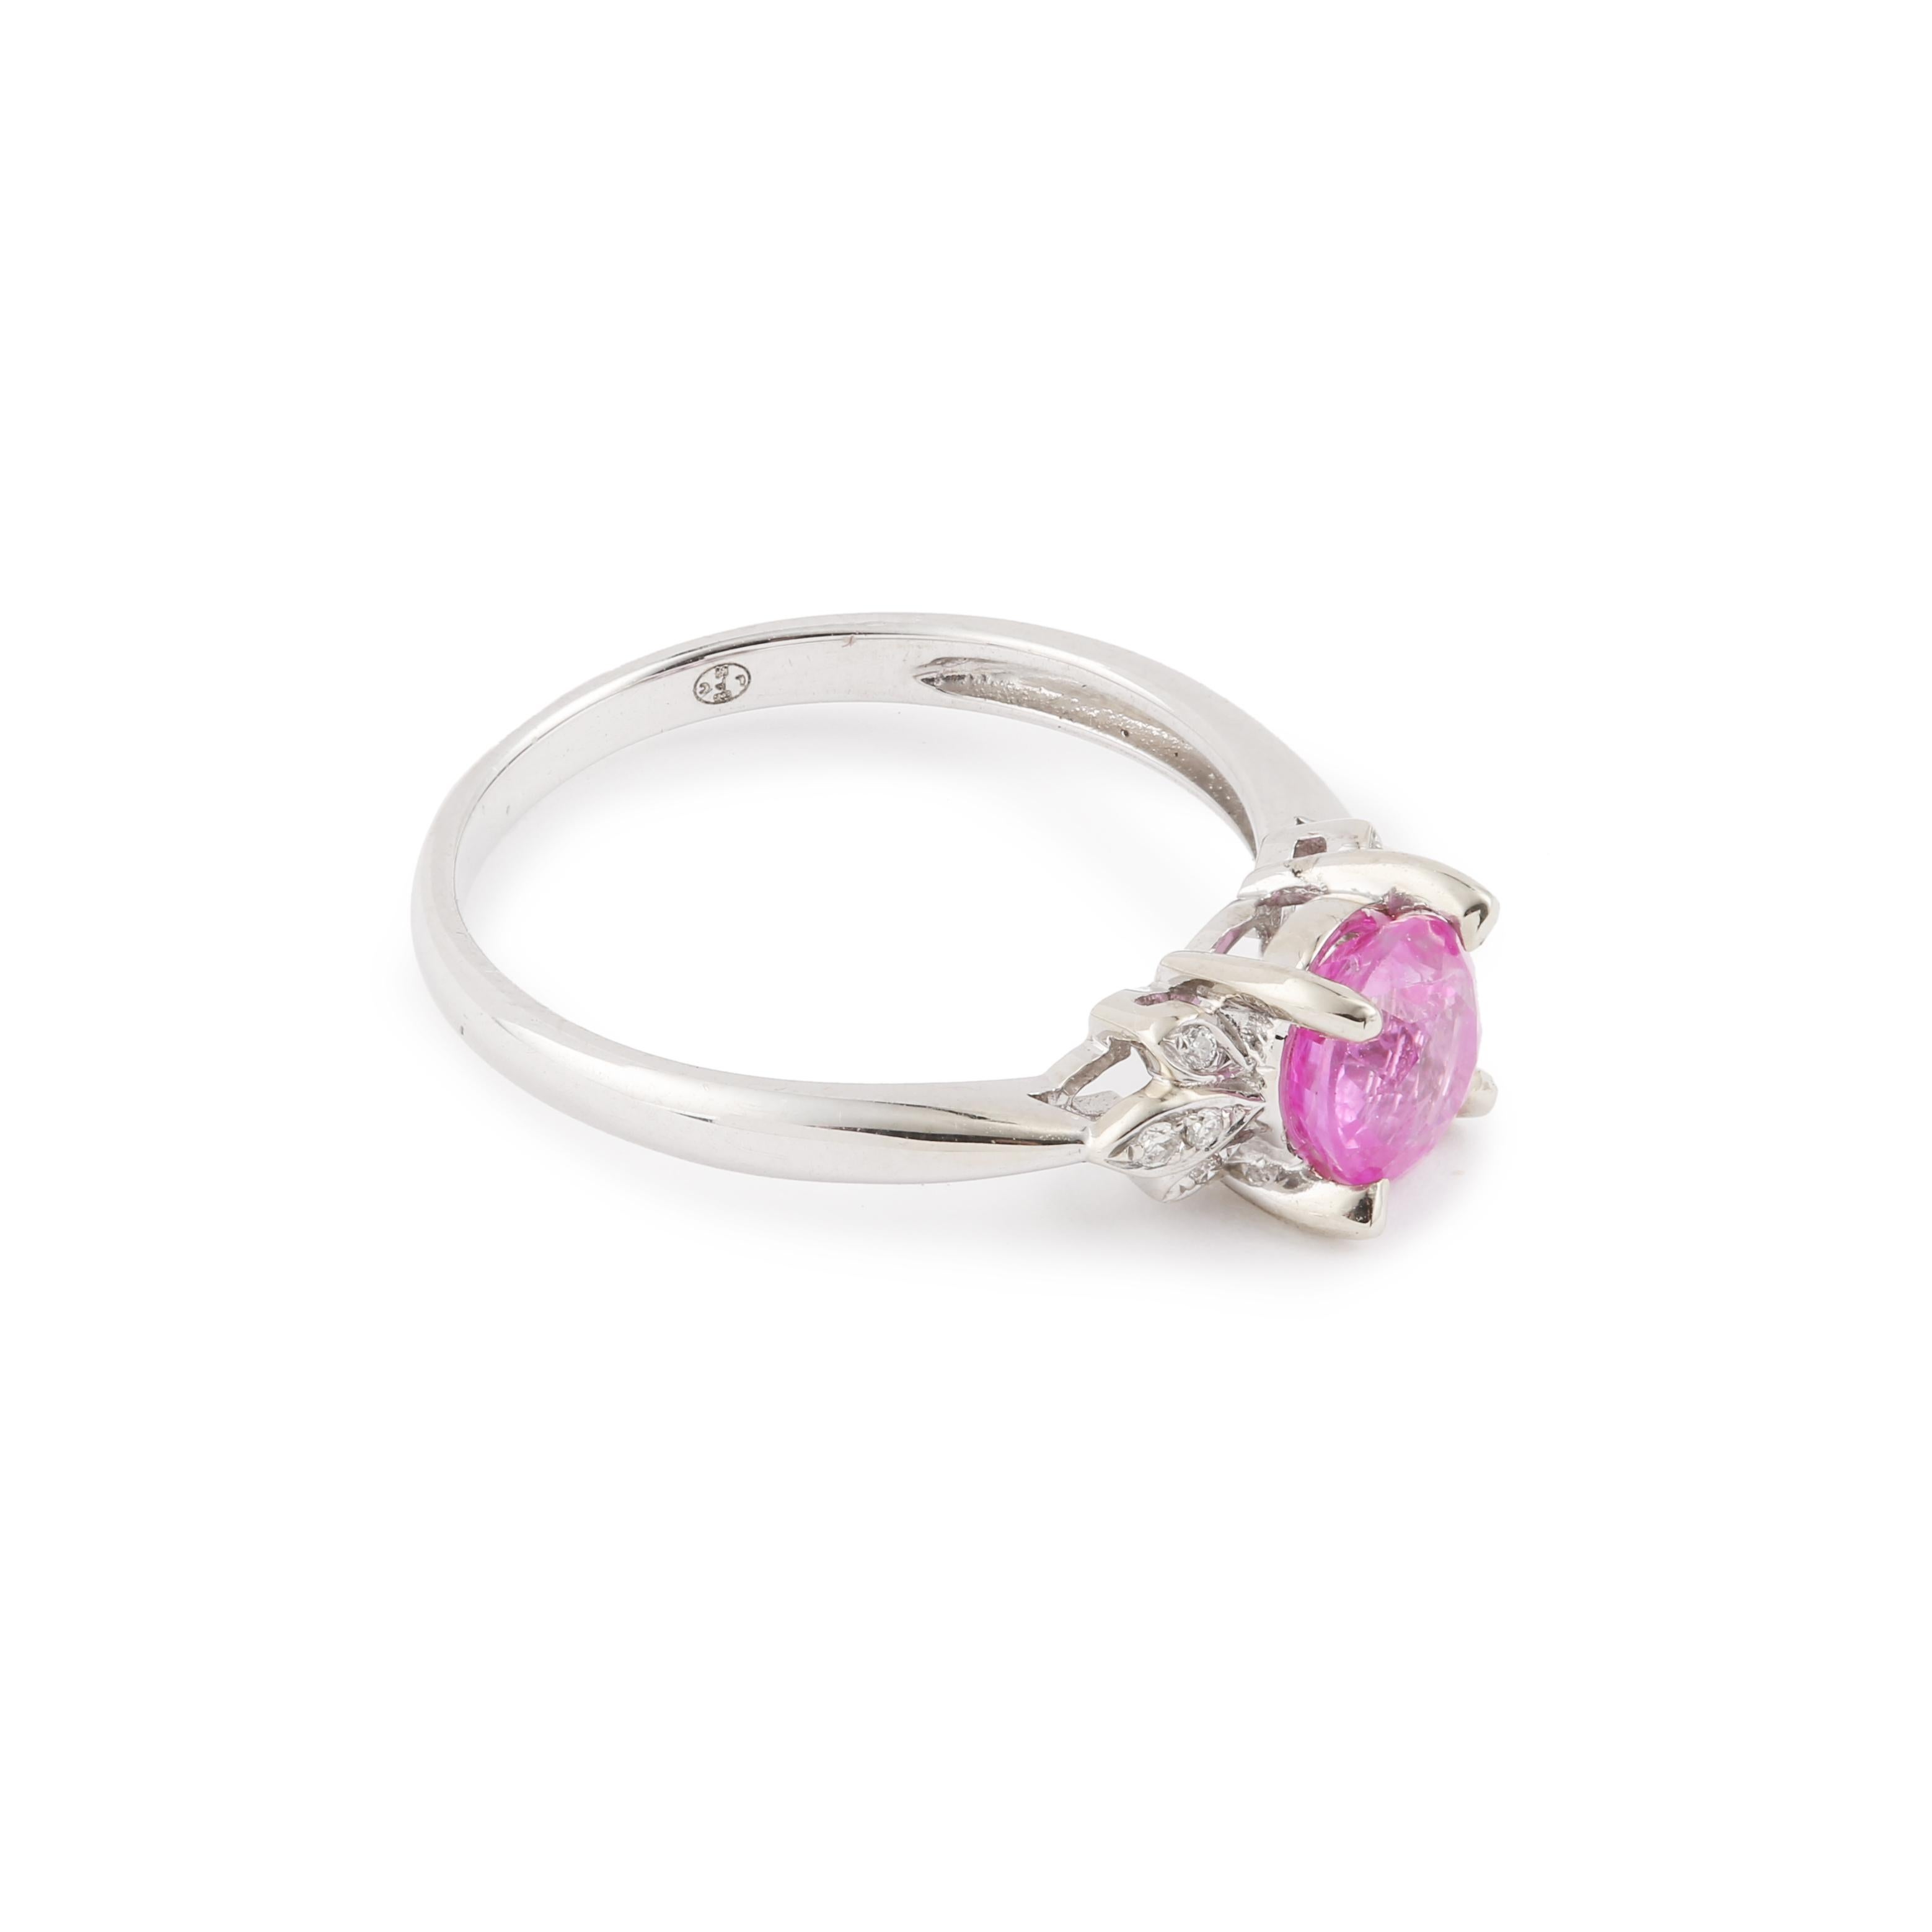 Ring aus Weißgold mit einem rosafarbenen Saphir im Rundschliff, besetzt mit Diamanten.

Gewicht des rosa Saphirs : 1,20 Karat

Gesamtgewicht der Diamanten: 0,04 Karat

Abmessungen: 6,38 x 12,67 x 5,84 mm (0,251 x 0,498 x 0,230 Zoll)

Fingergröße :